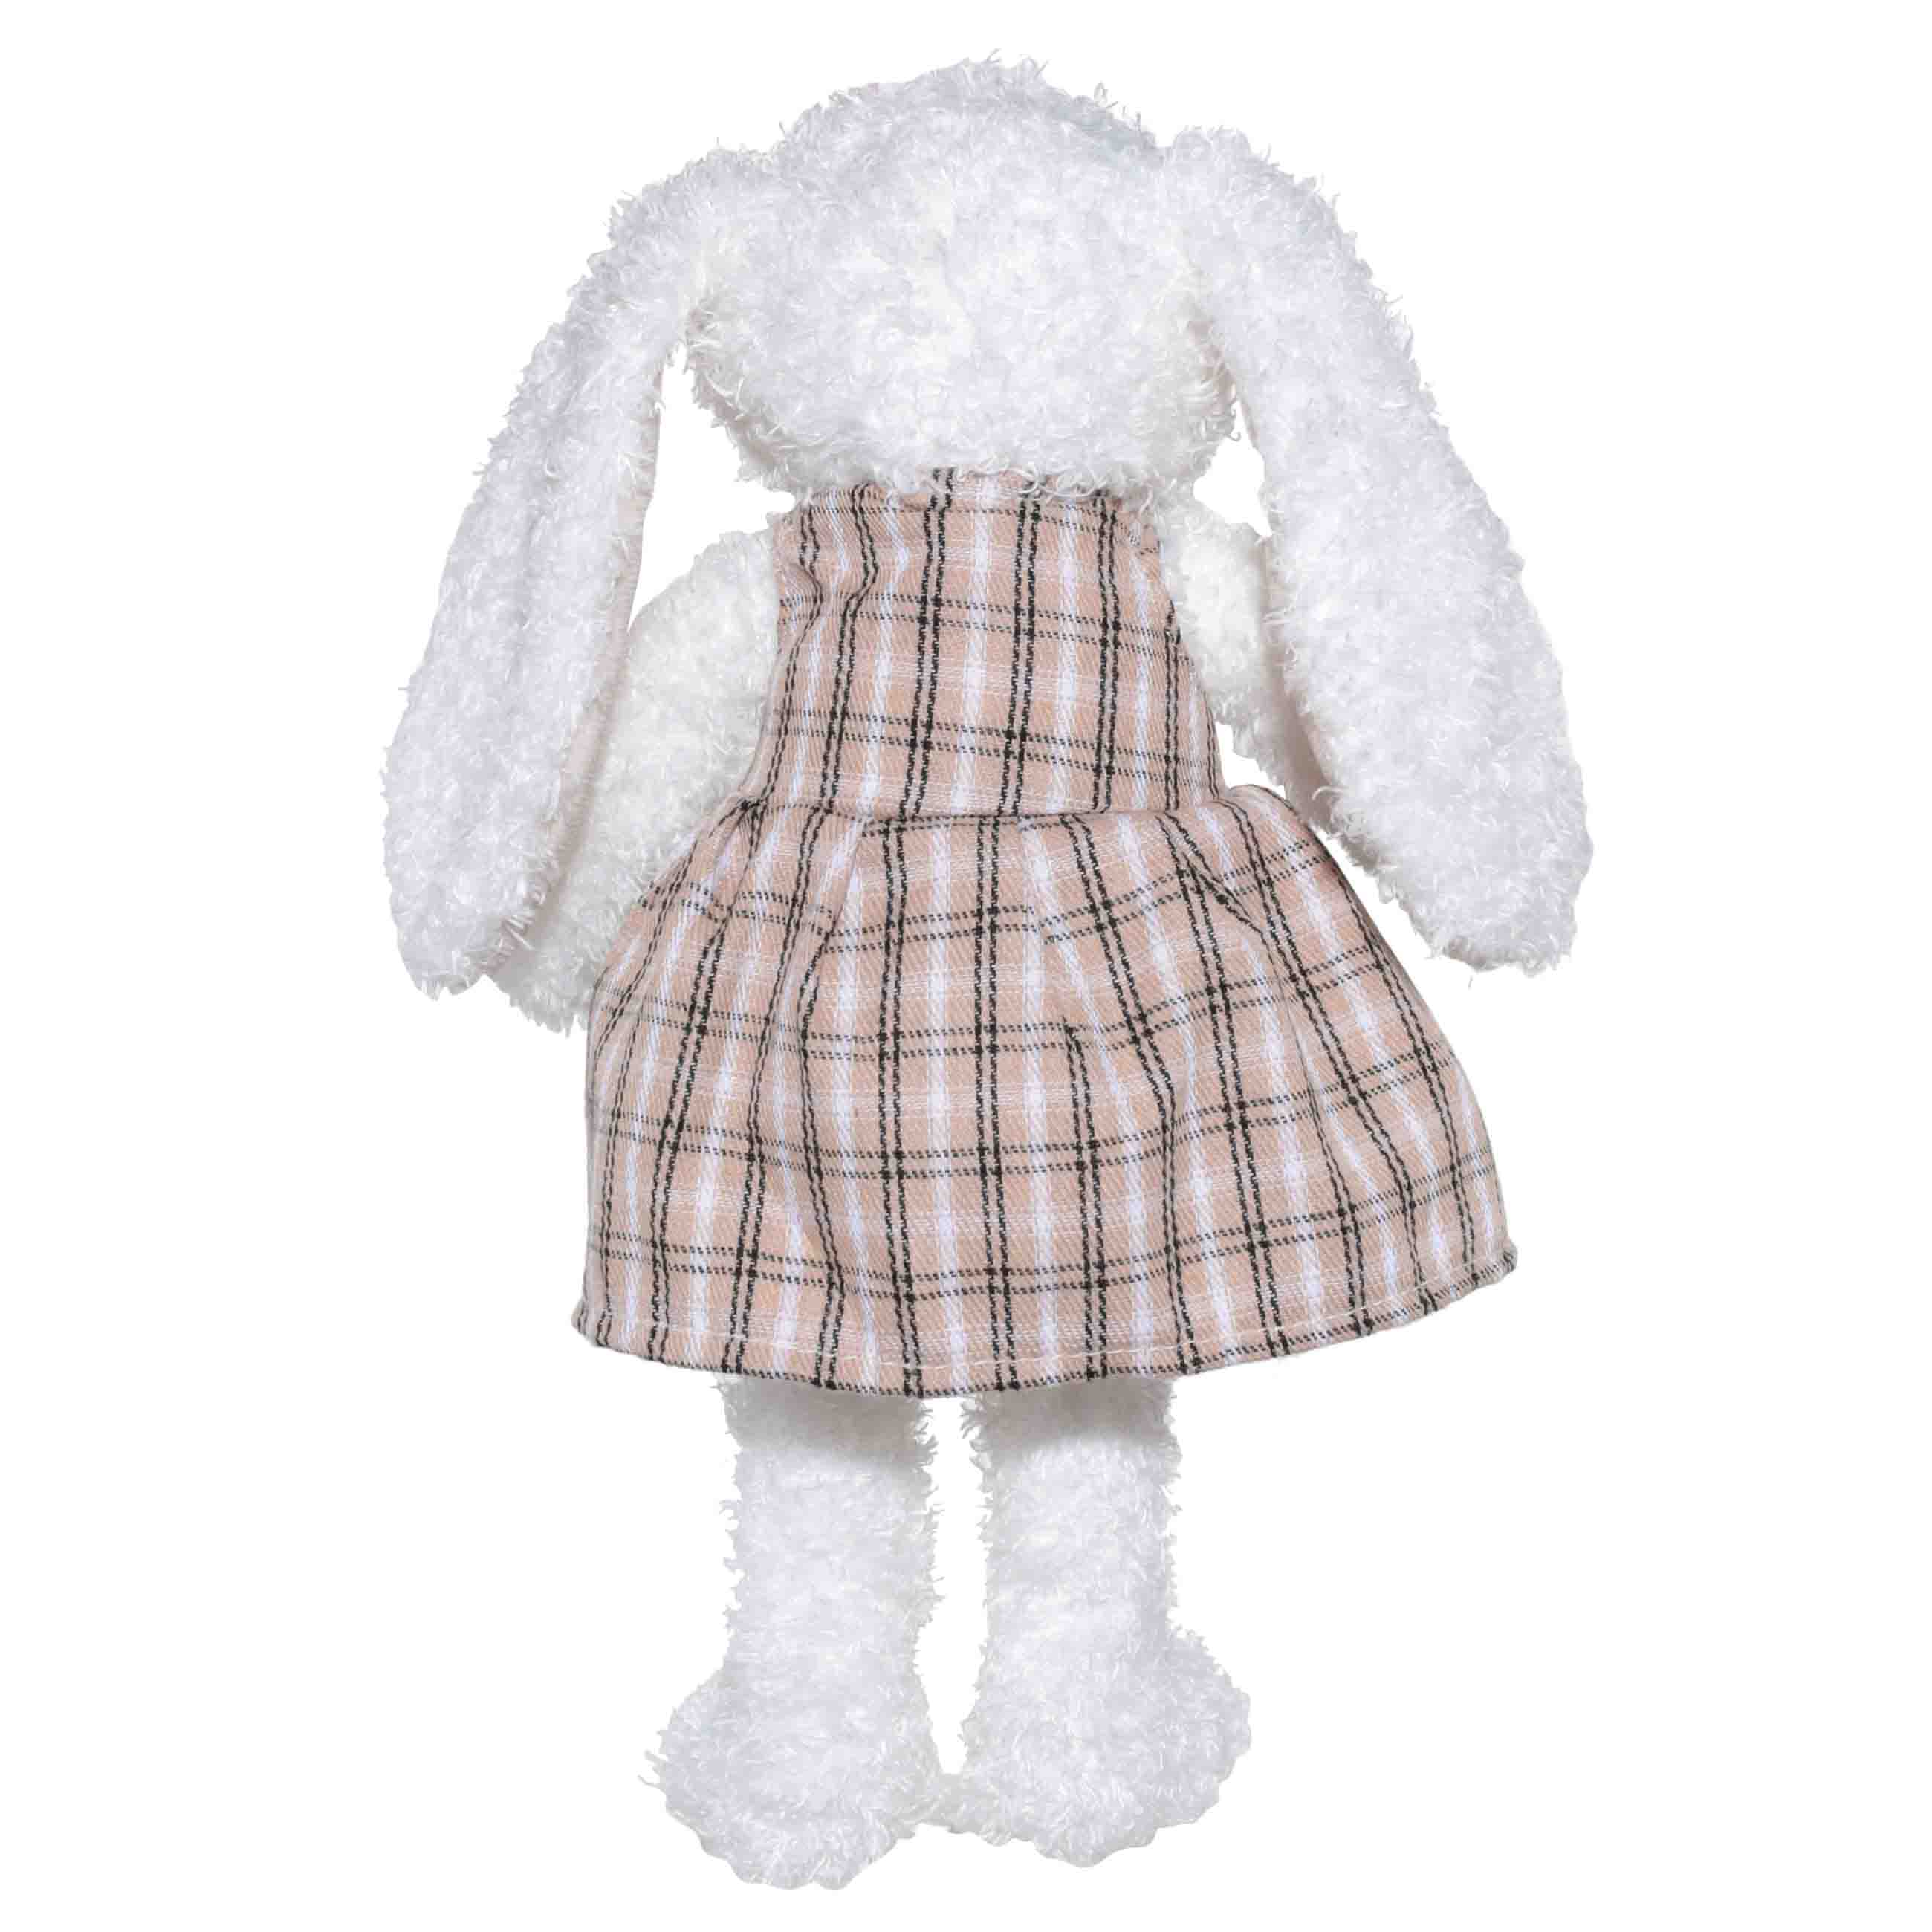 Игрушка, 21 см, мягкая, полиэстер, бежевая, Крольчиха в платье, Rabbit изображение № 3